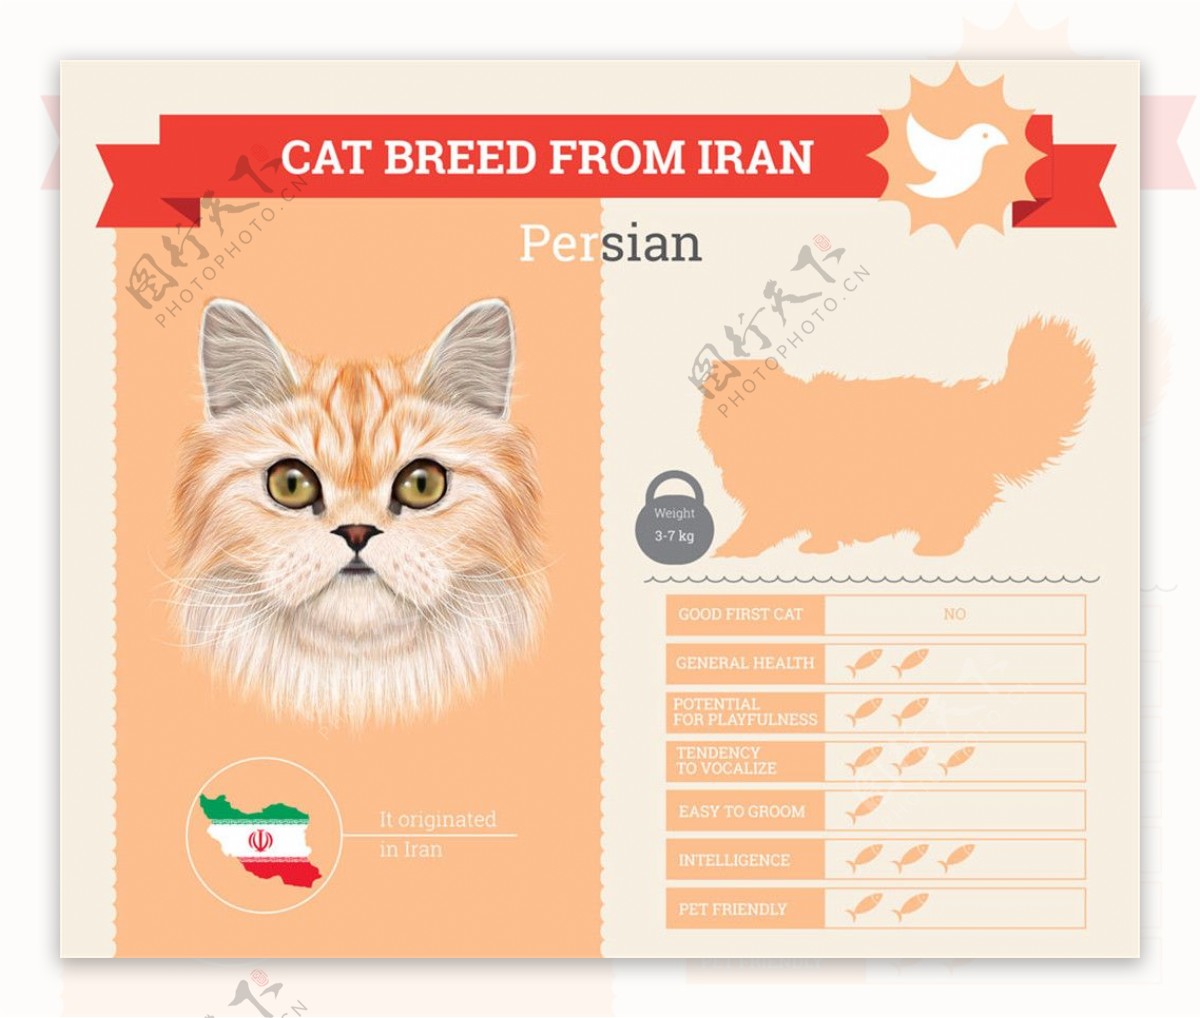 波斯猫档案图表图片